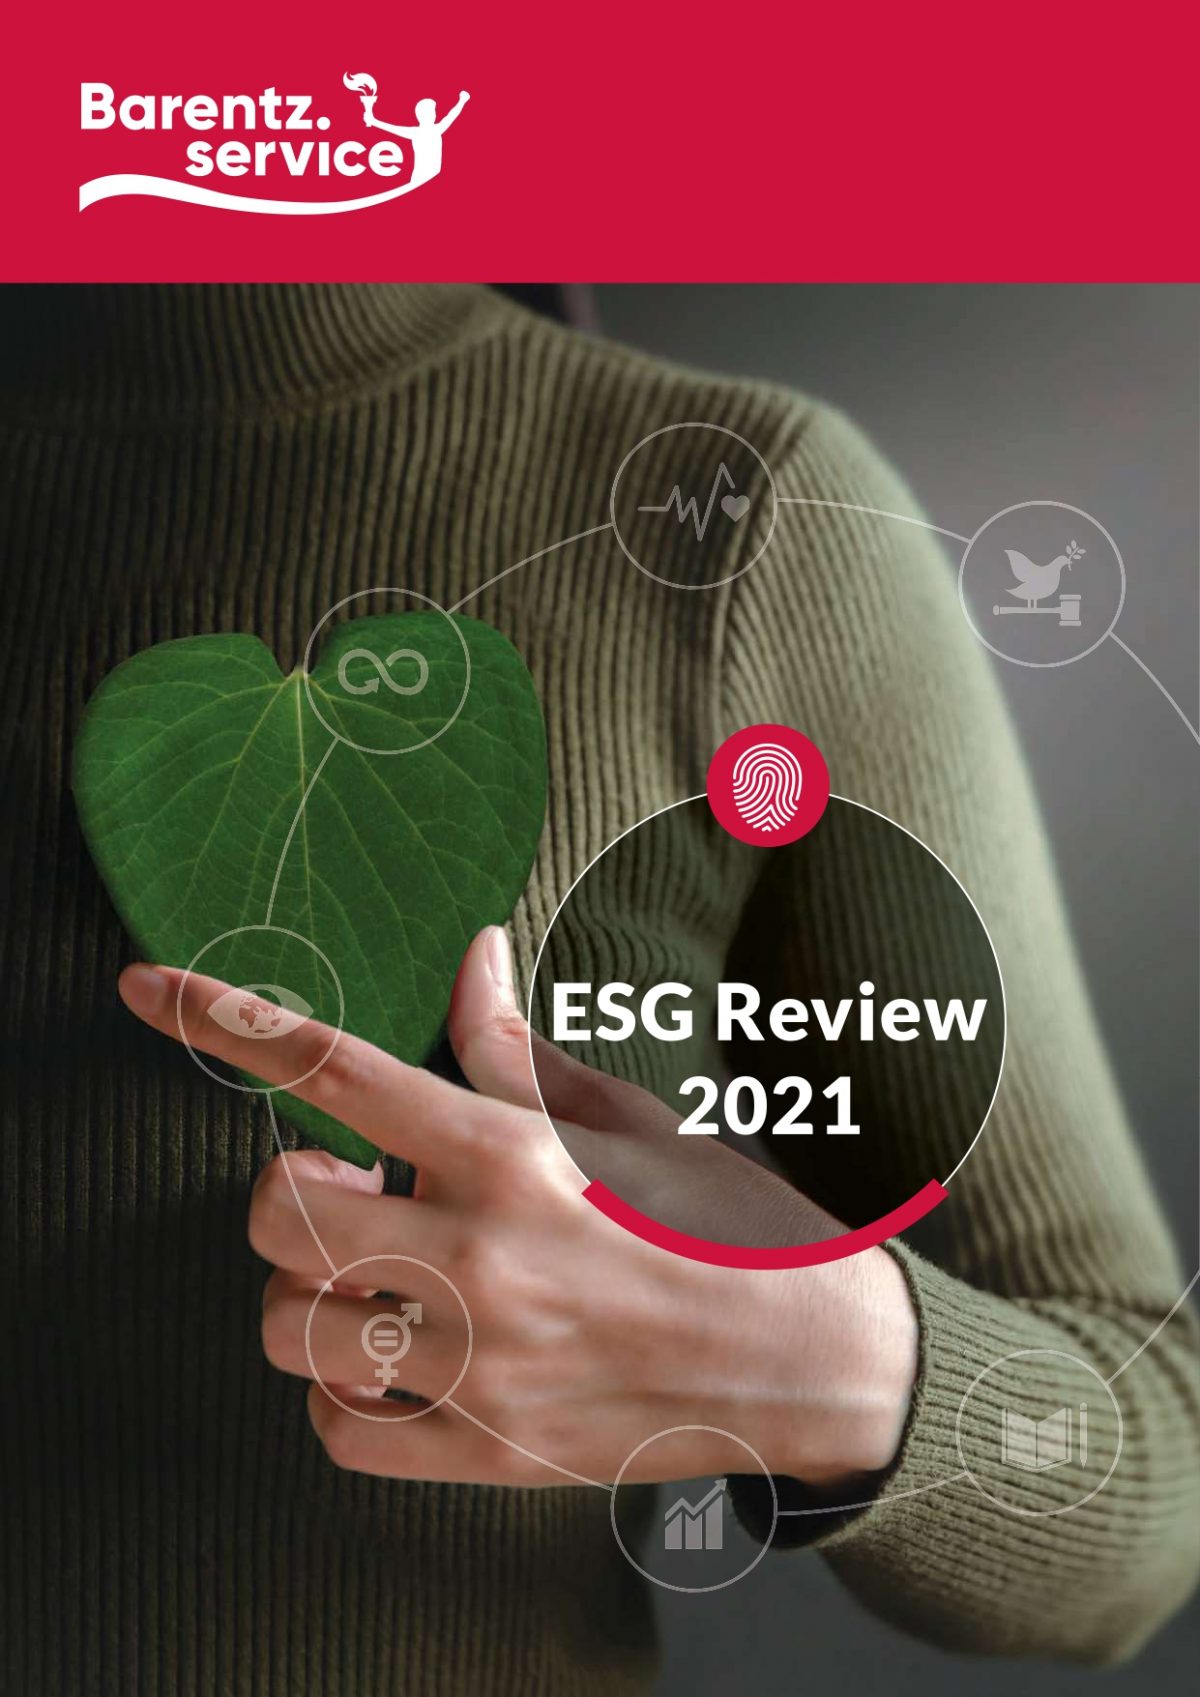 ESG Review Barentz Service